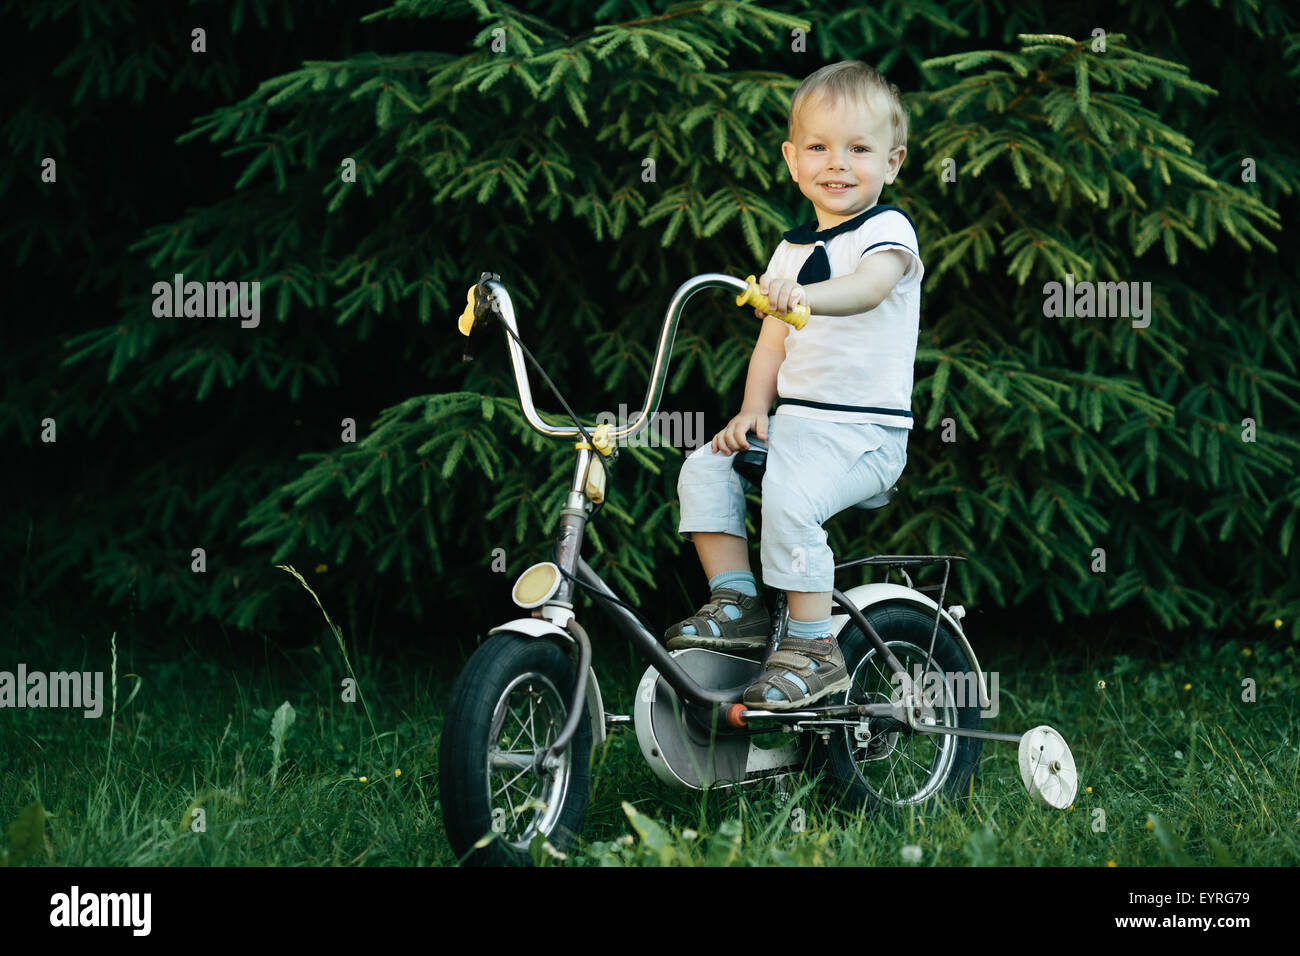 little happy boy on bike Stock Photo